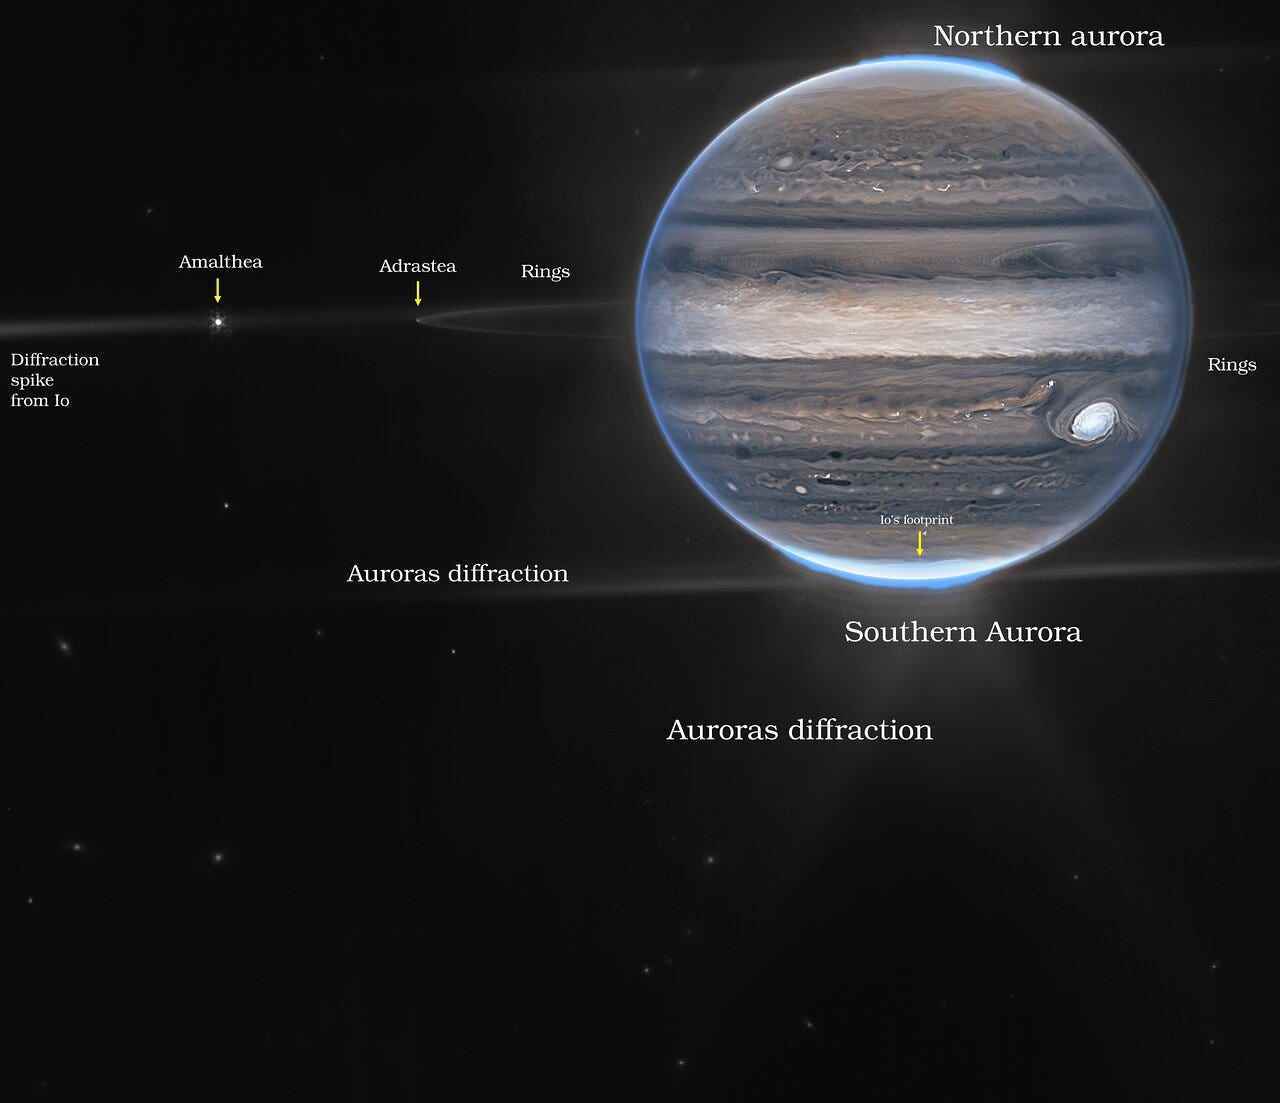 Webb hat eine Weitfeldansicht aufgenommen, auf der Jupiter mit seinen schwachen Ringen, die millionenfach schwächer sind als der Planet, und zwei winzige Monde namens Amalthea und Adrastea zu sehen sind.